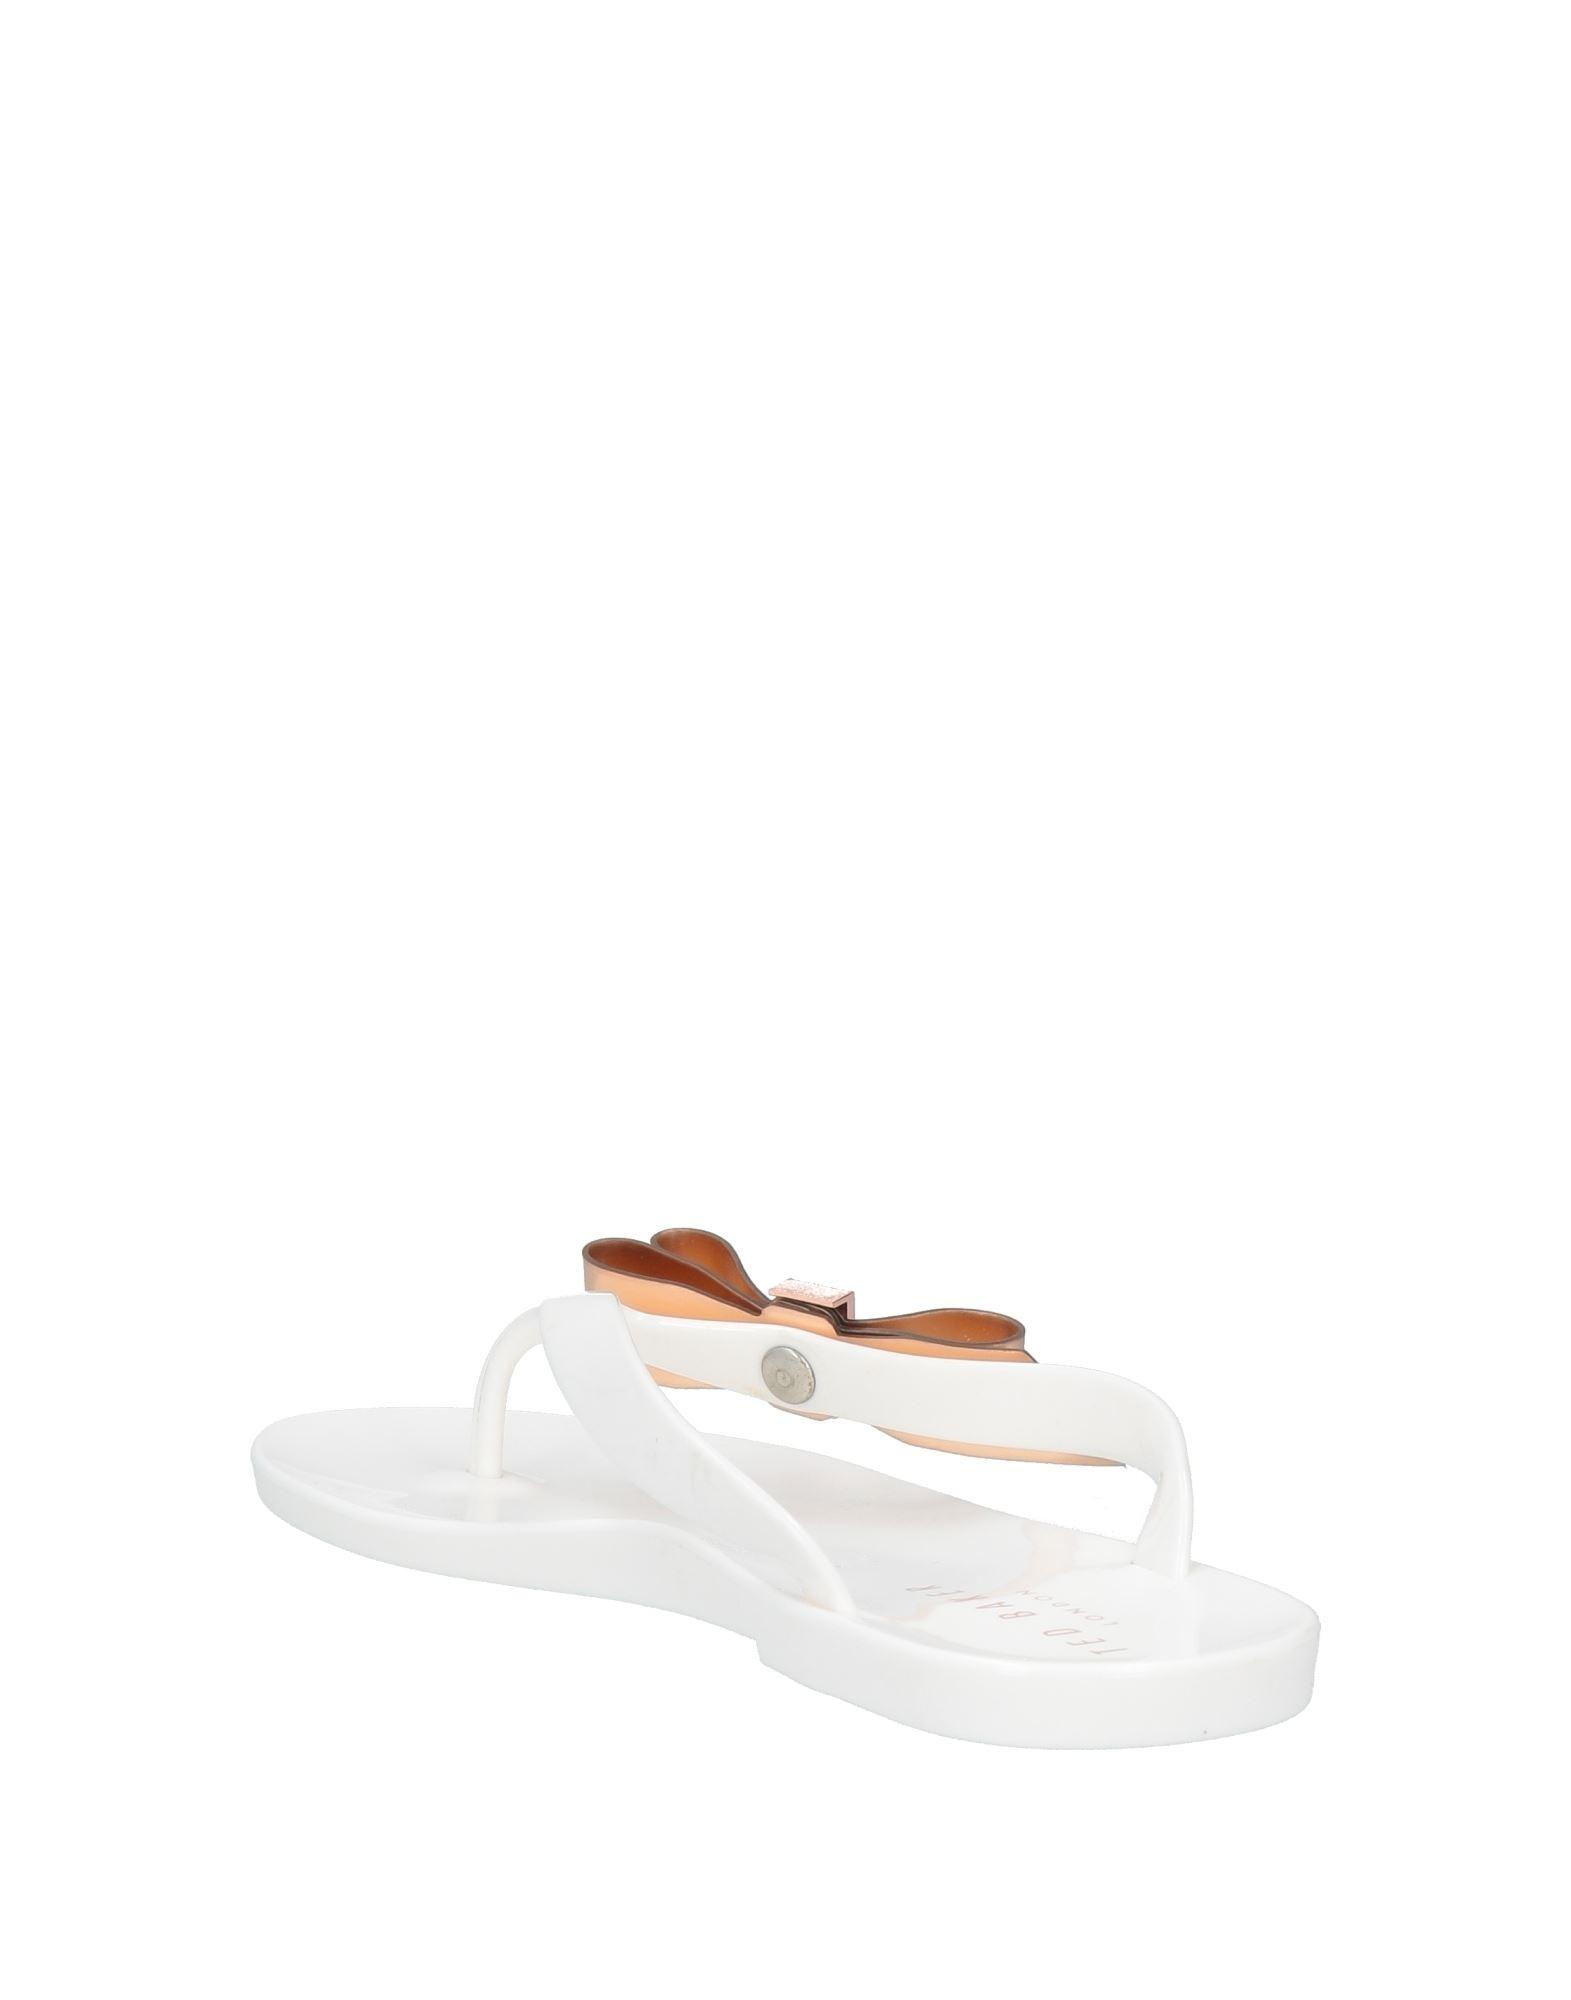 Ted Baker Thong Sandal in White | Lyst